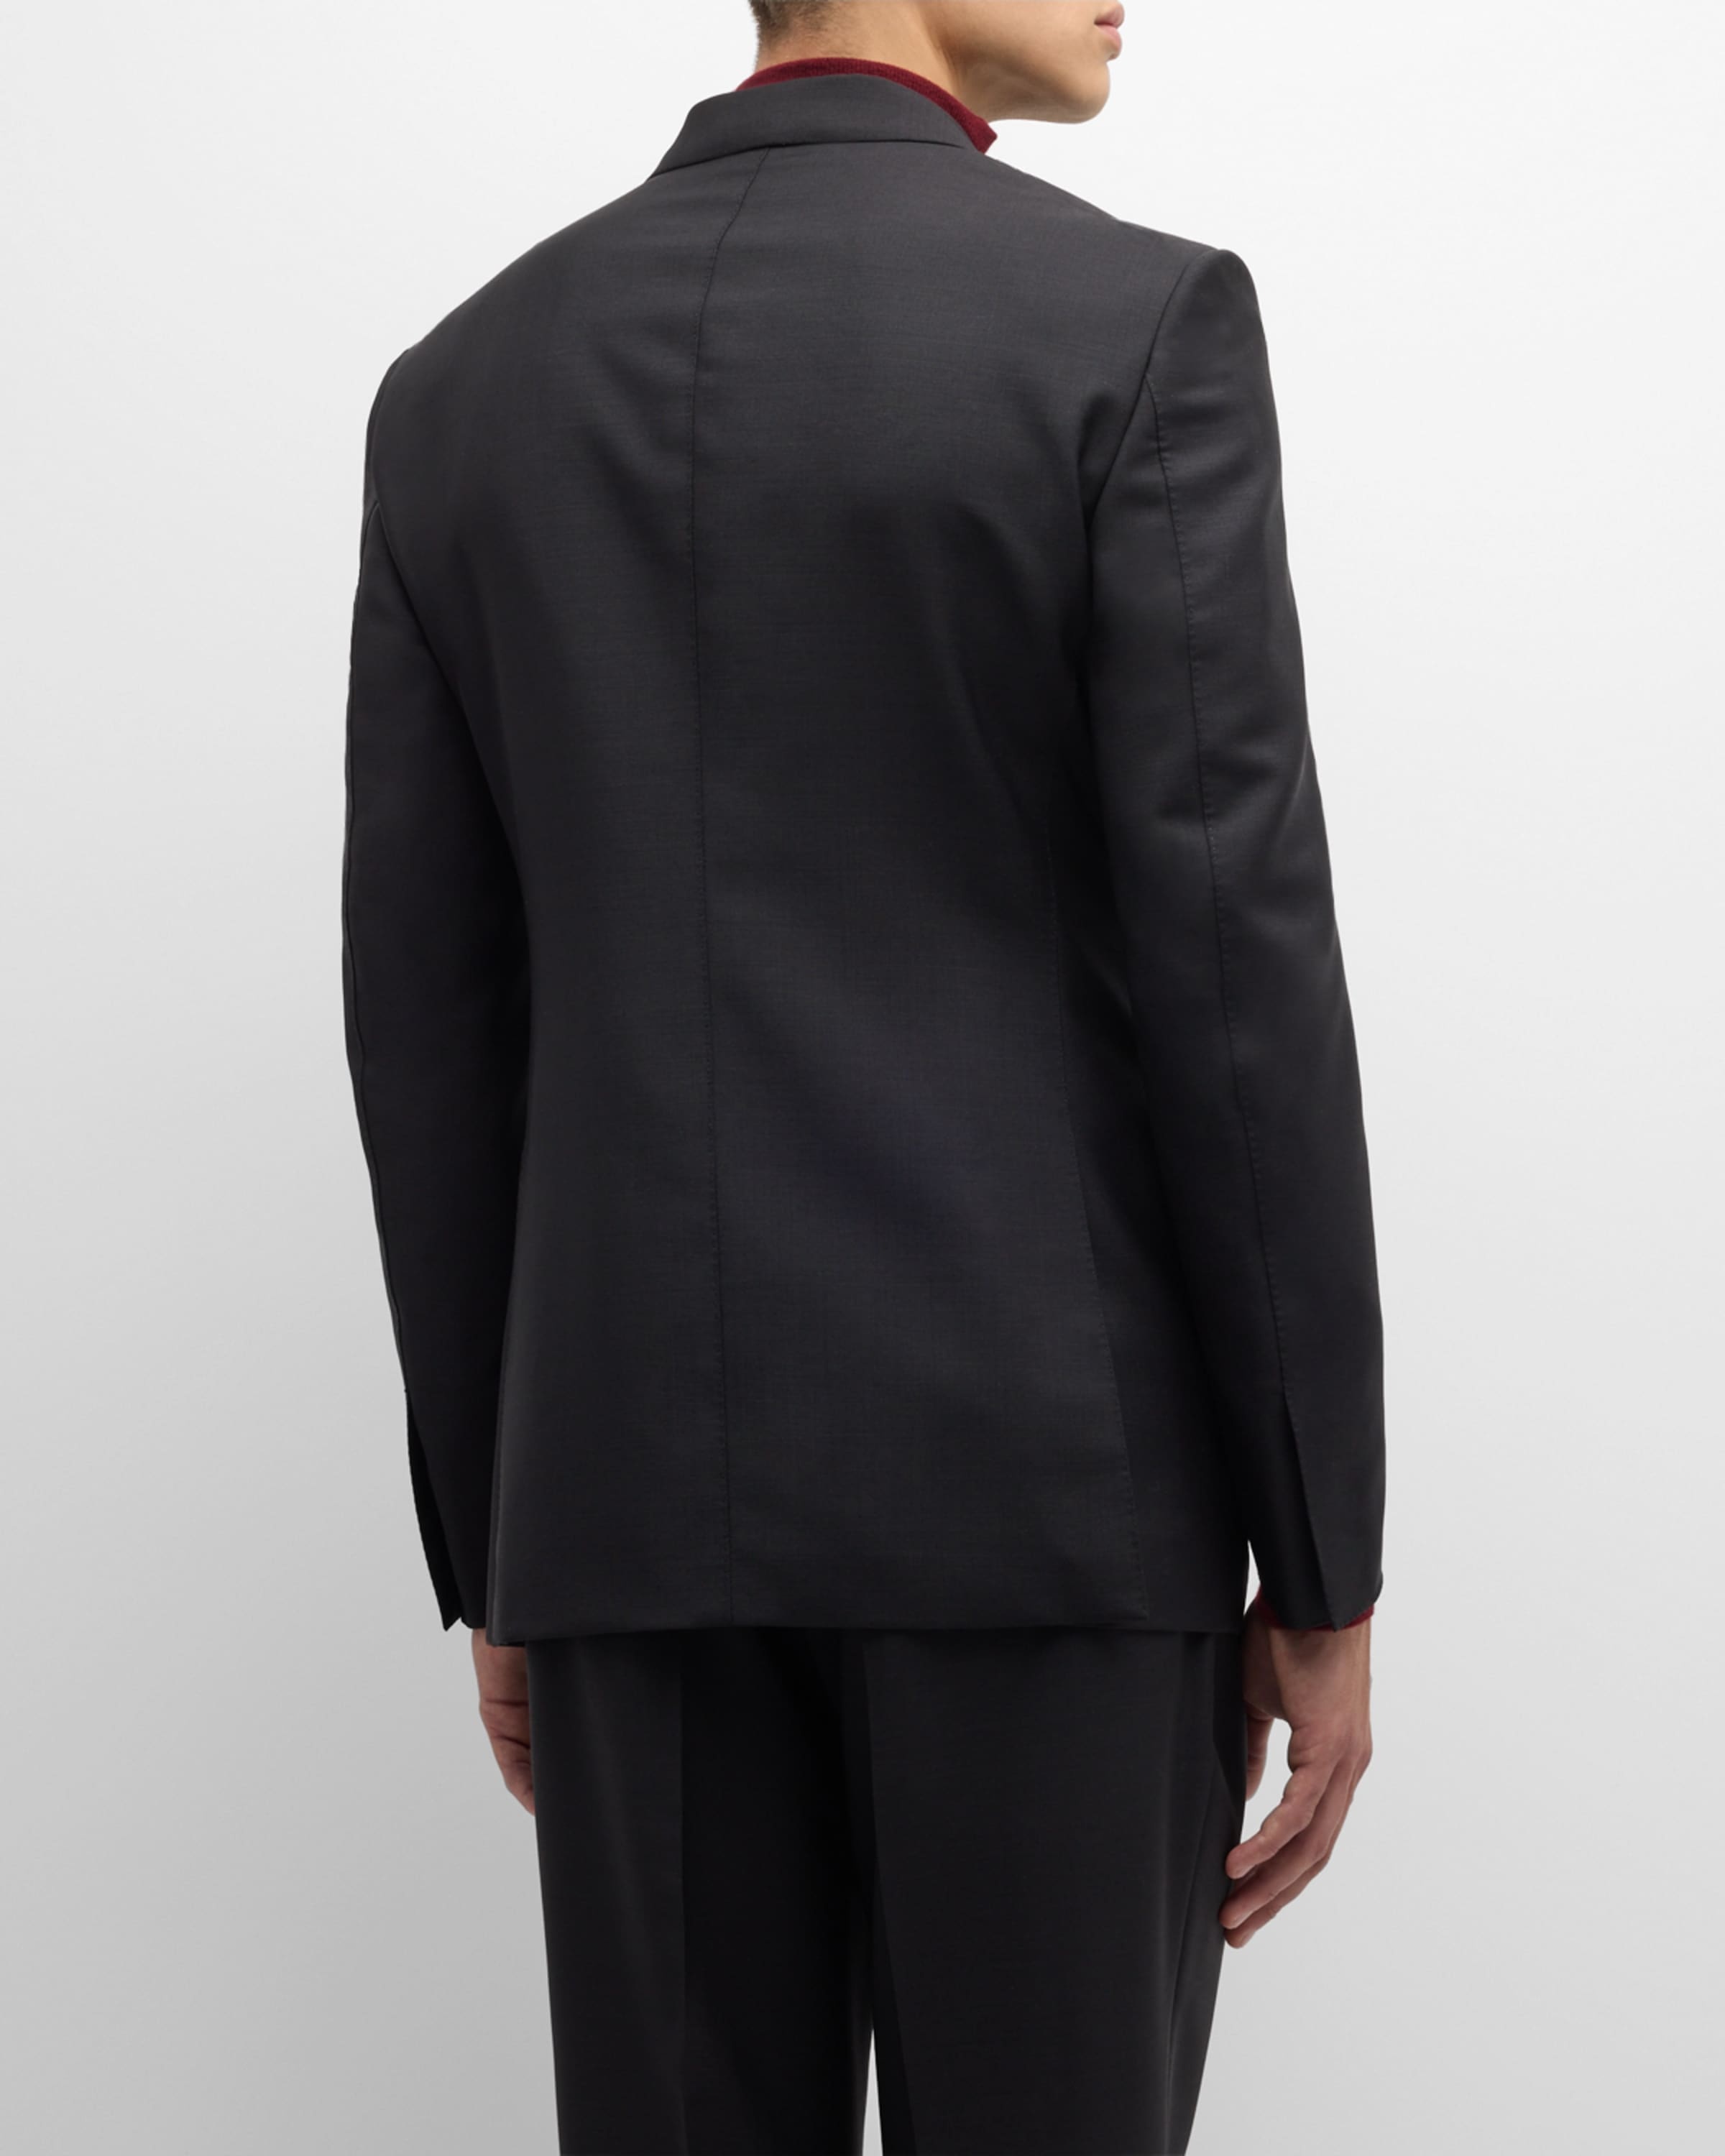 Men's Shelton Solid Mohair Suit - 5